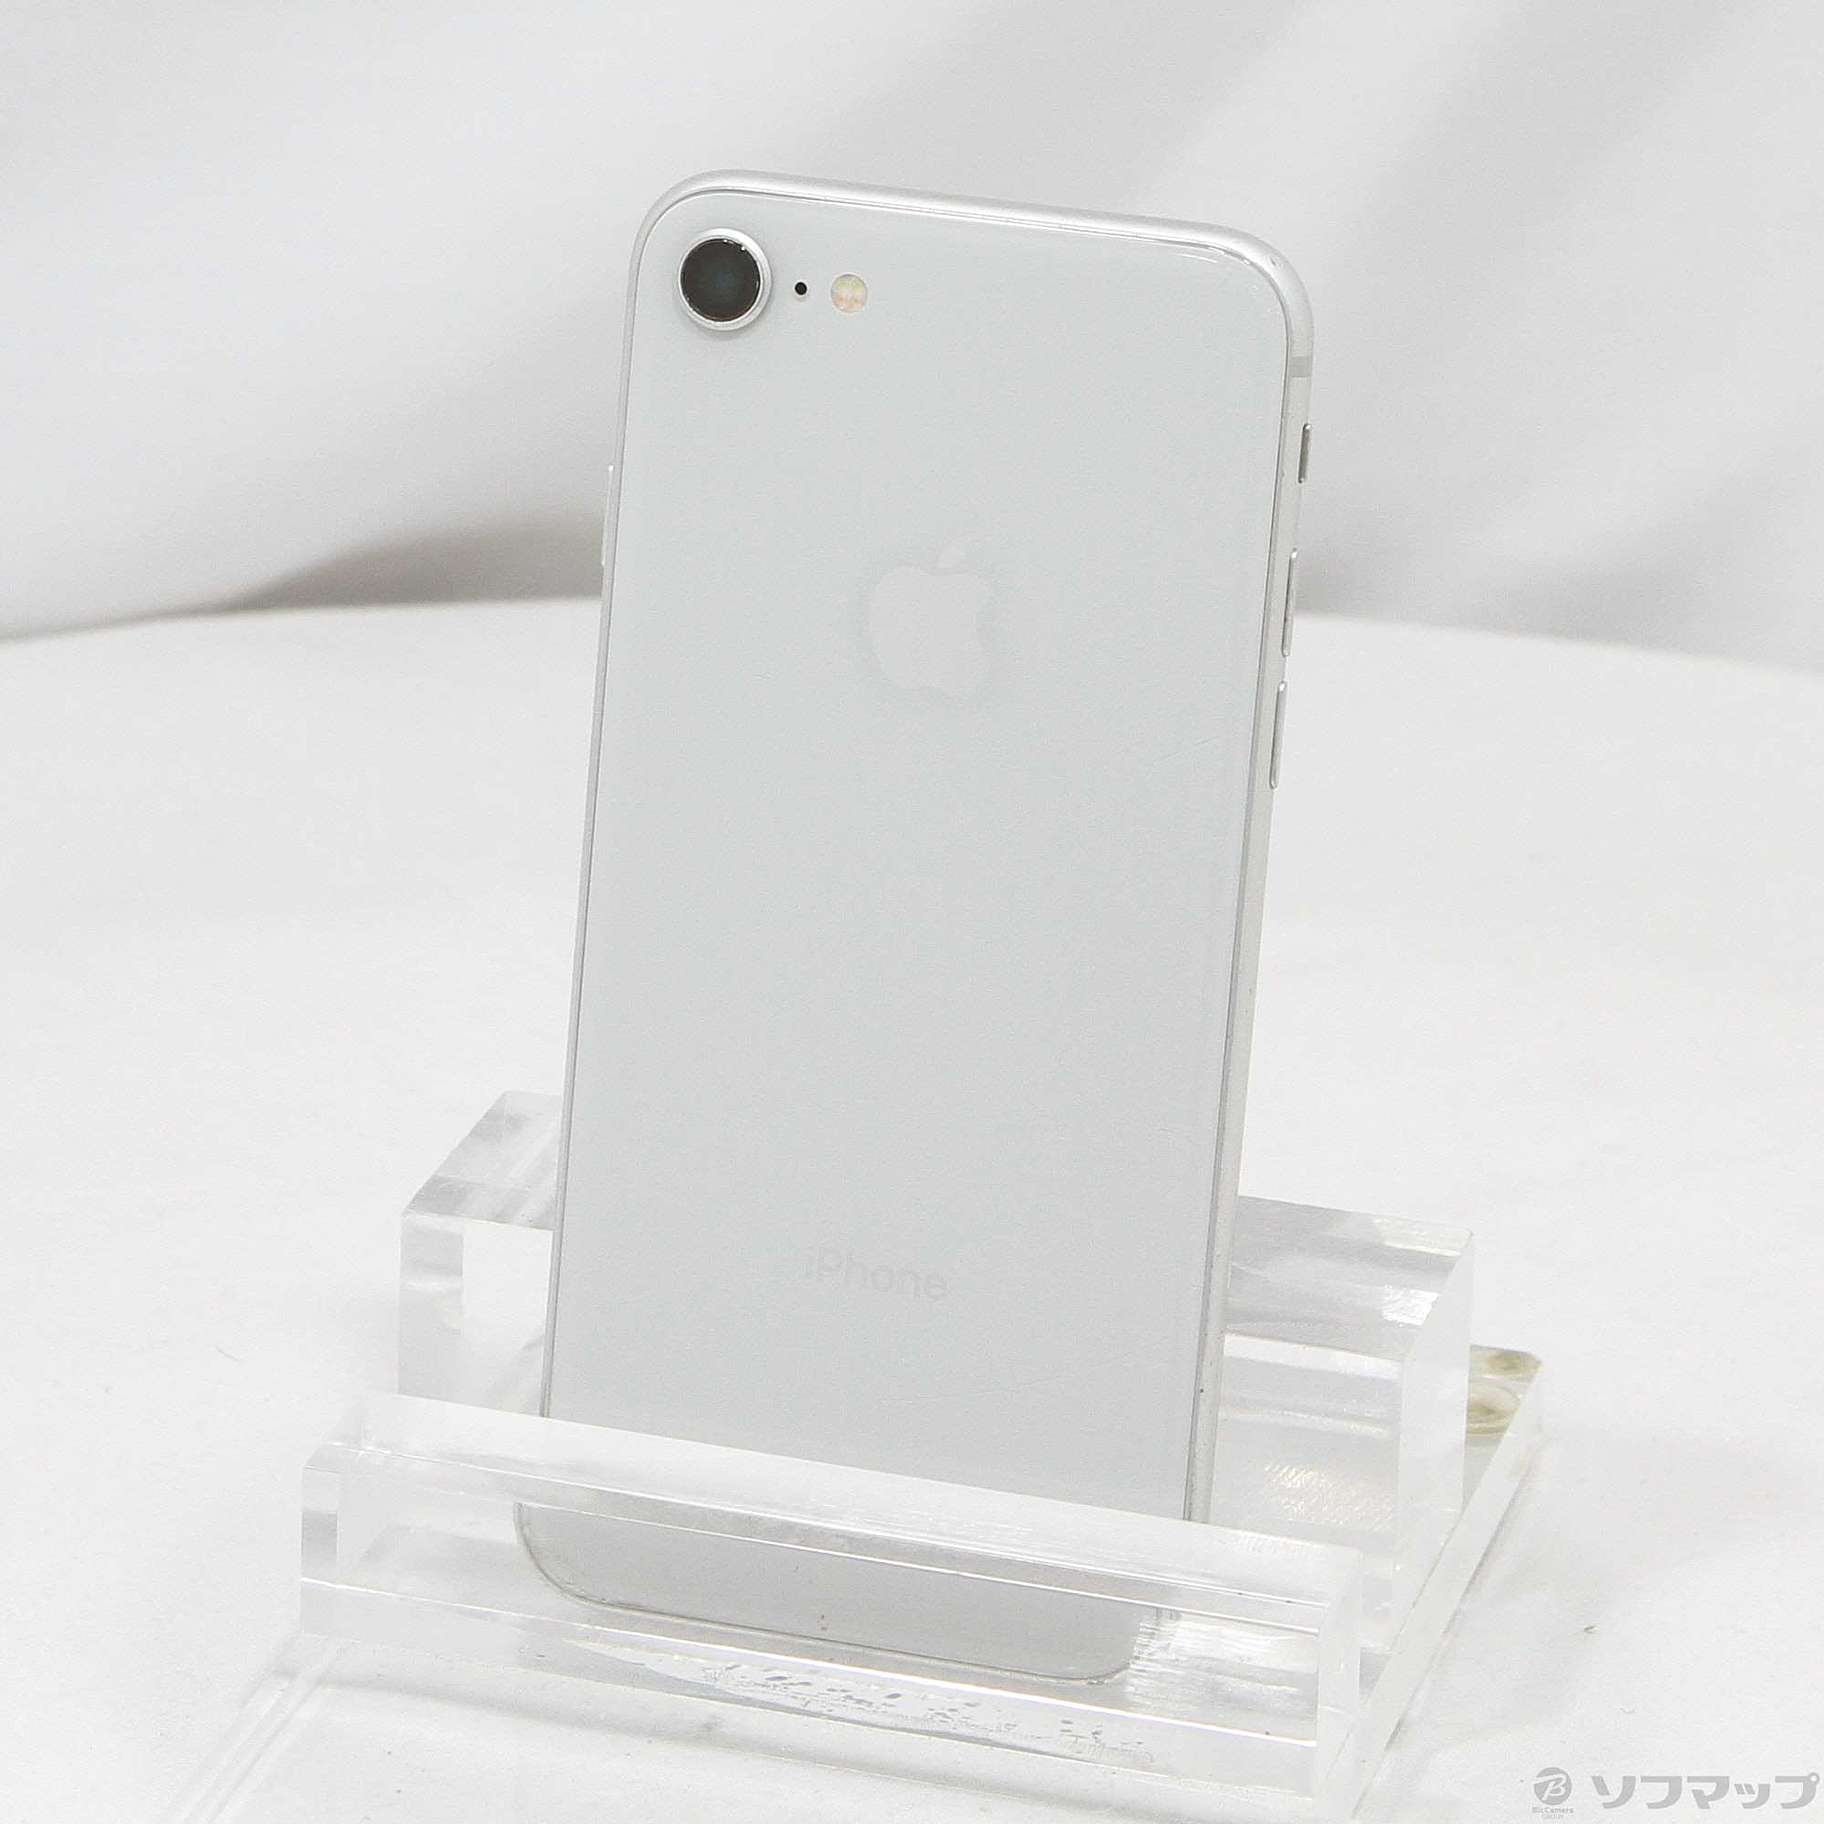 【京都姉妹】SoftBank MQ852J/A iPhone 8 256GB シルバー SB iPhone